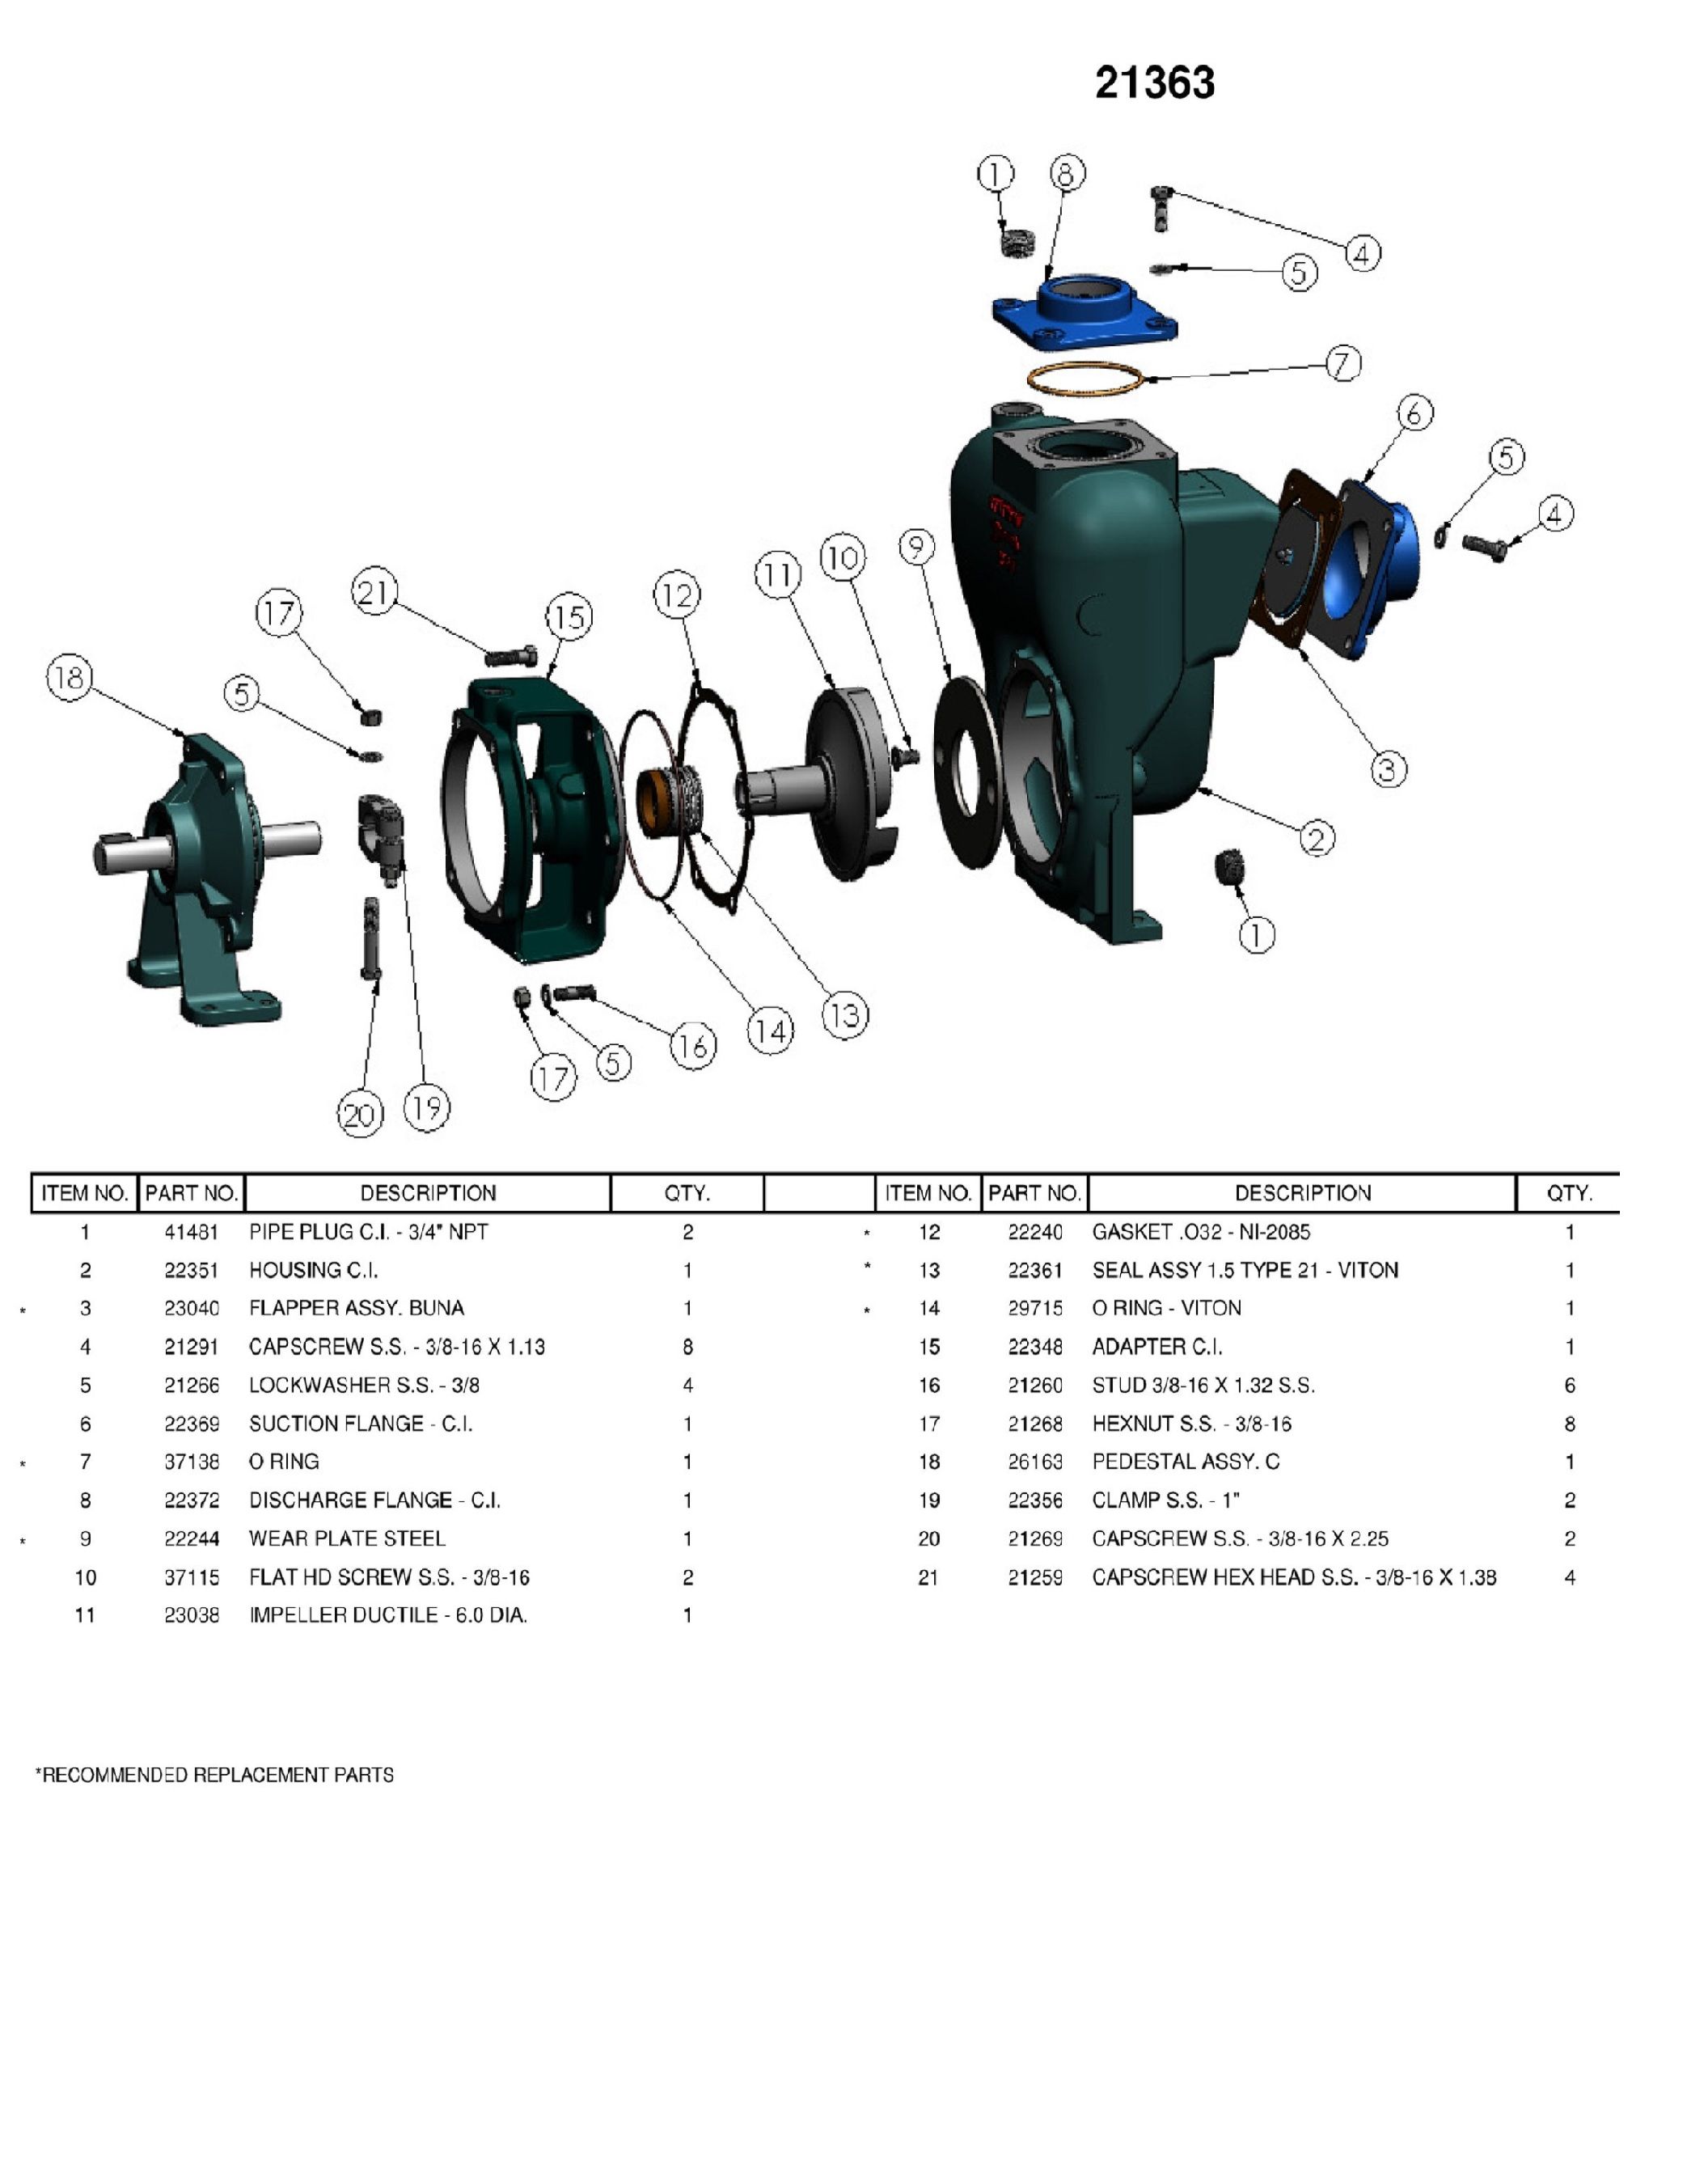 flomax-10-industrial-vacuum-pump_parts-list-7006-c-3